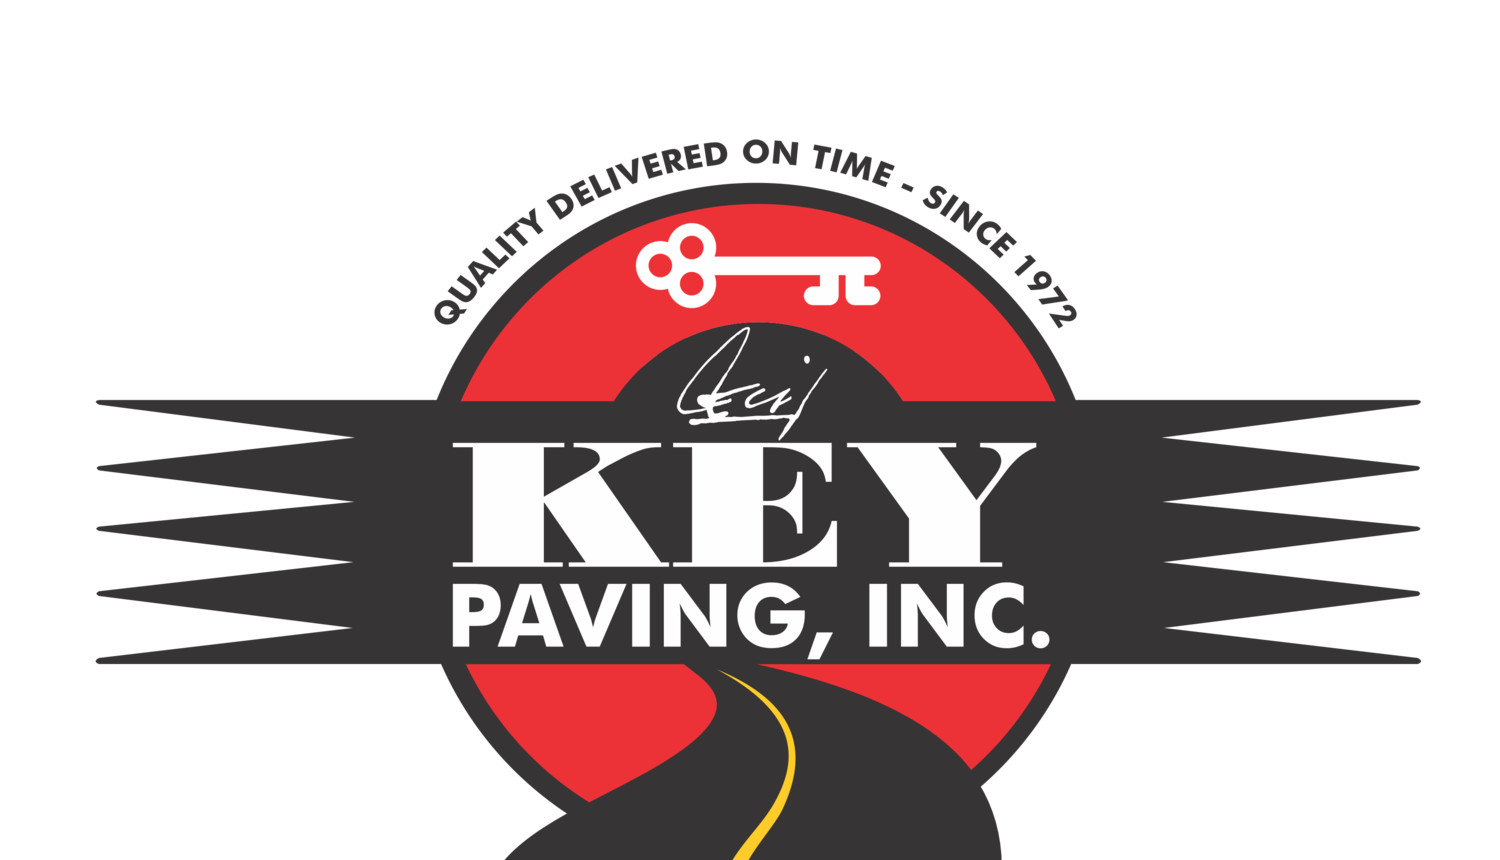 Cecil Key Paving, Inc.